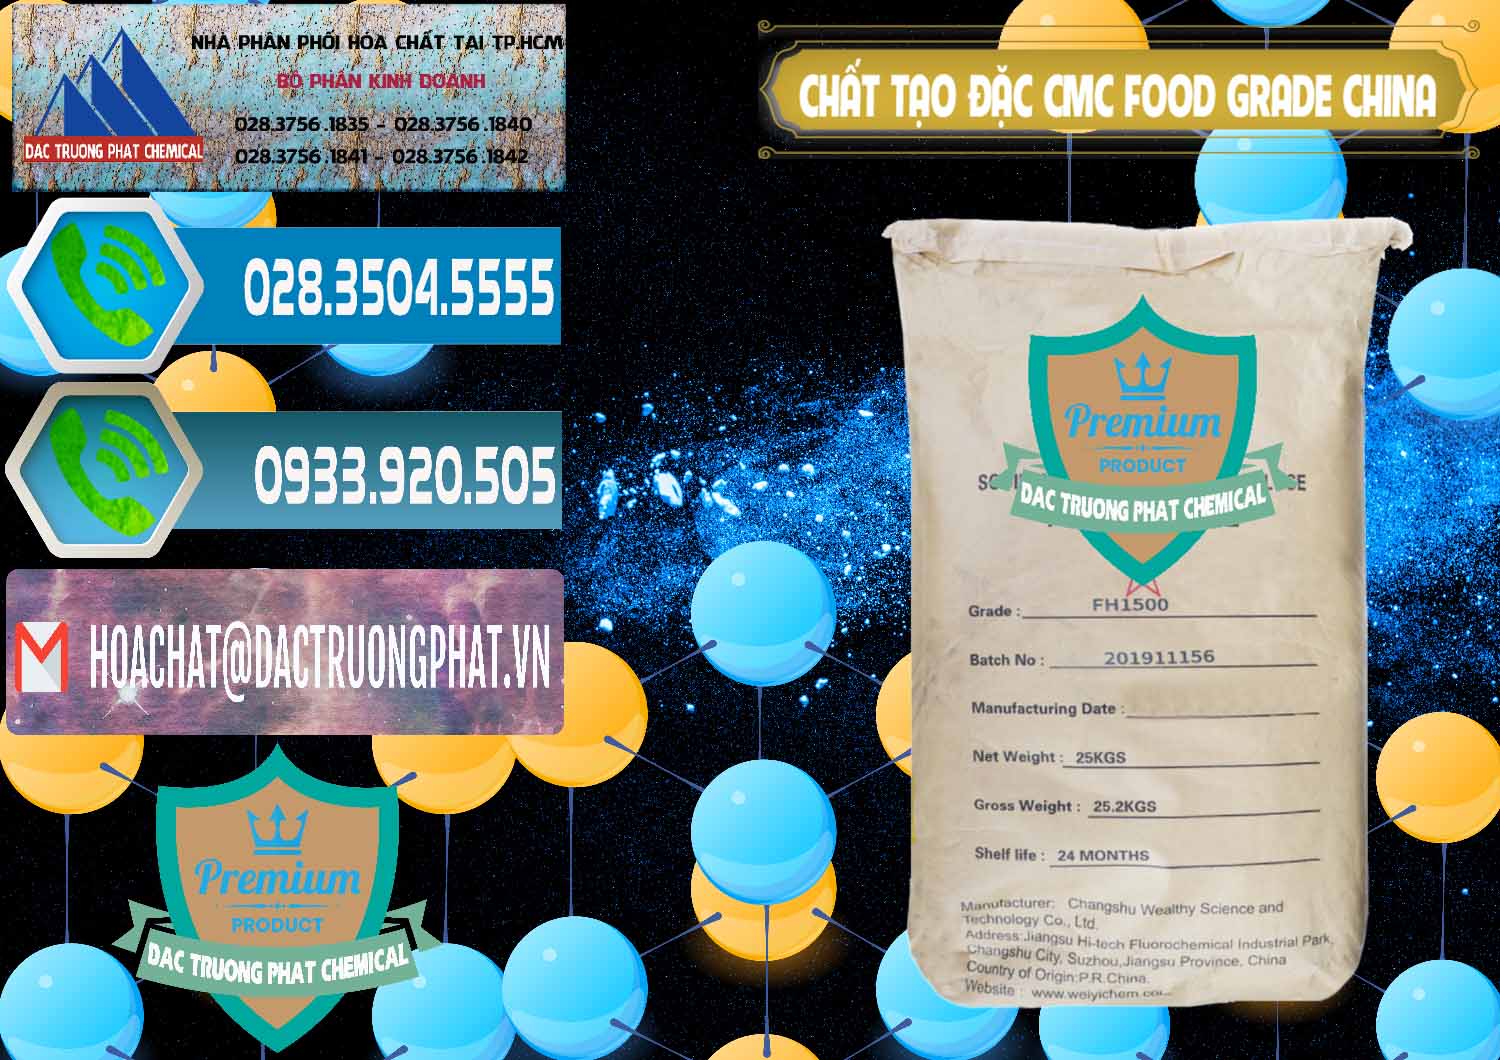 Cty chuyên bán và phân phối Chất Tạo Đặc CMC Wealthy Food Grade Trung Quốc China - 0426 - Cung cấp & bán hóa chất tại TP.HCM - congtyhoachat.net